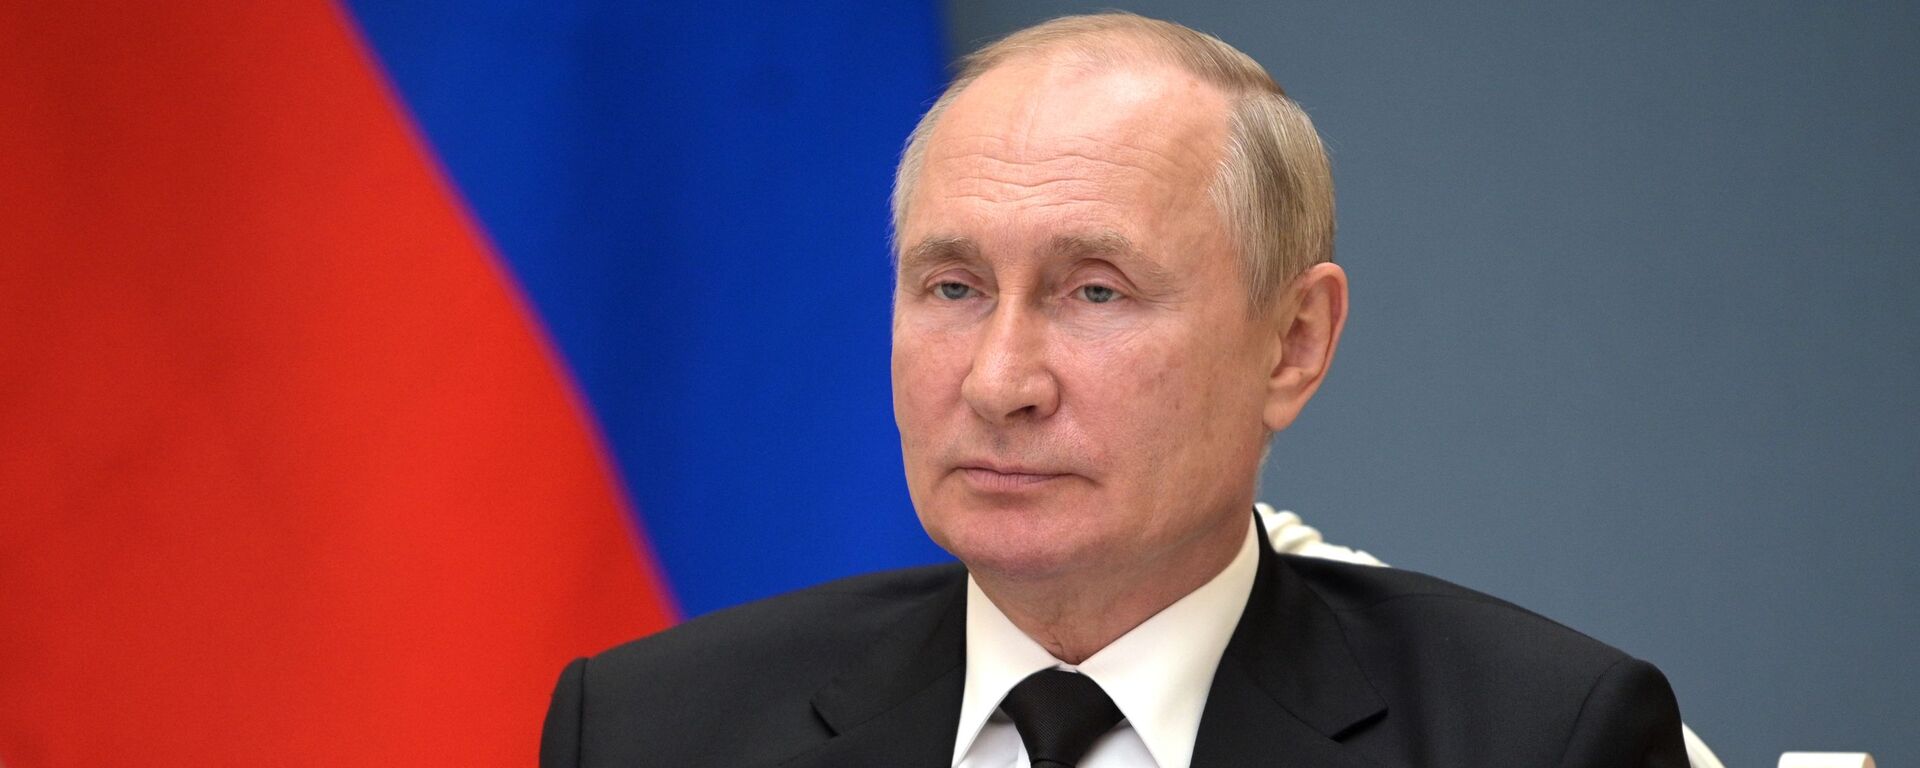 Tổng thống Nga Vladimir Putin tham dự Hội nghị thượng đỉnh BRICS lần thứ XIII (ngày 9 tháng 9 năm 2021) - Sputnik Việt Nam, 1920, 09.09.2021